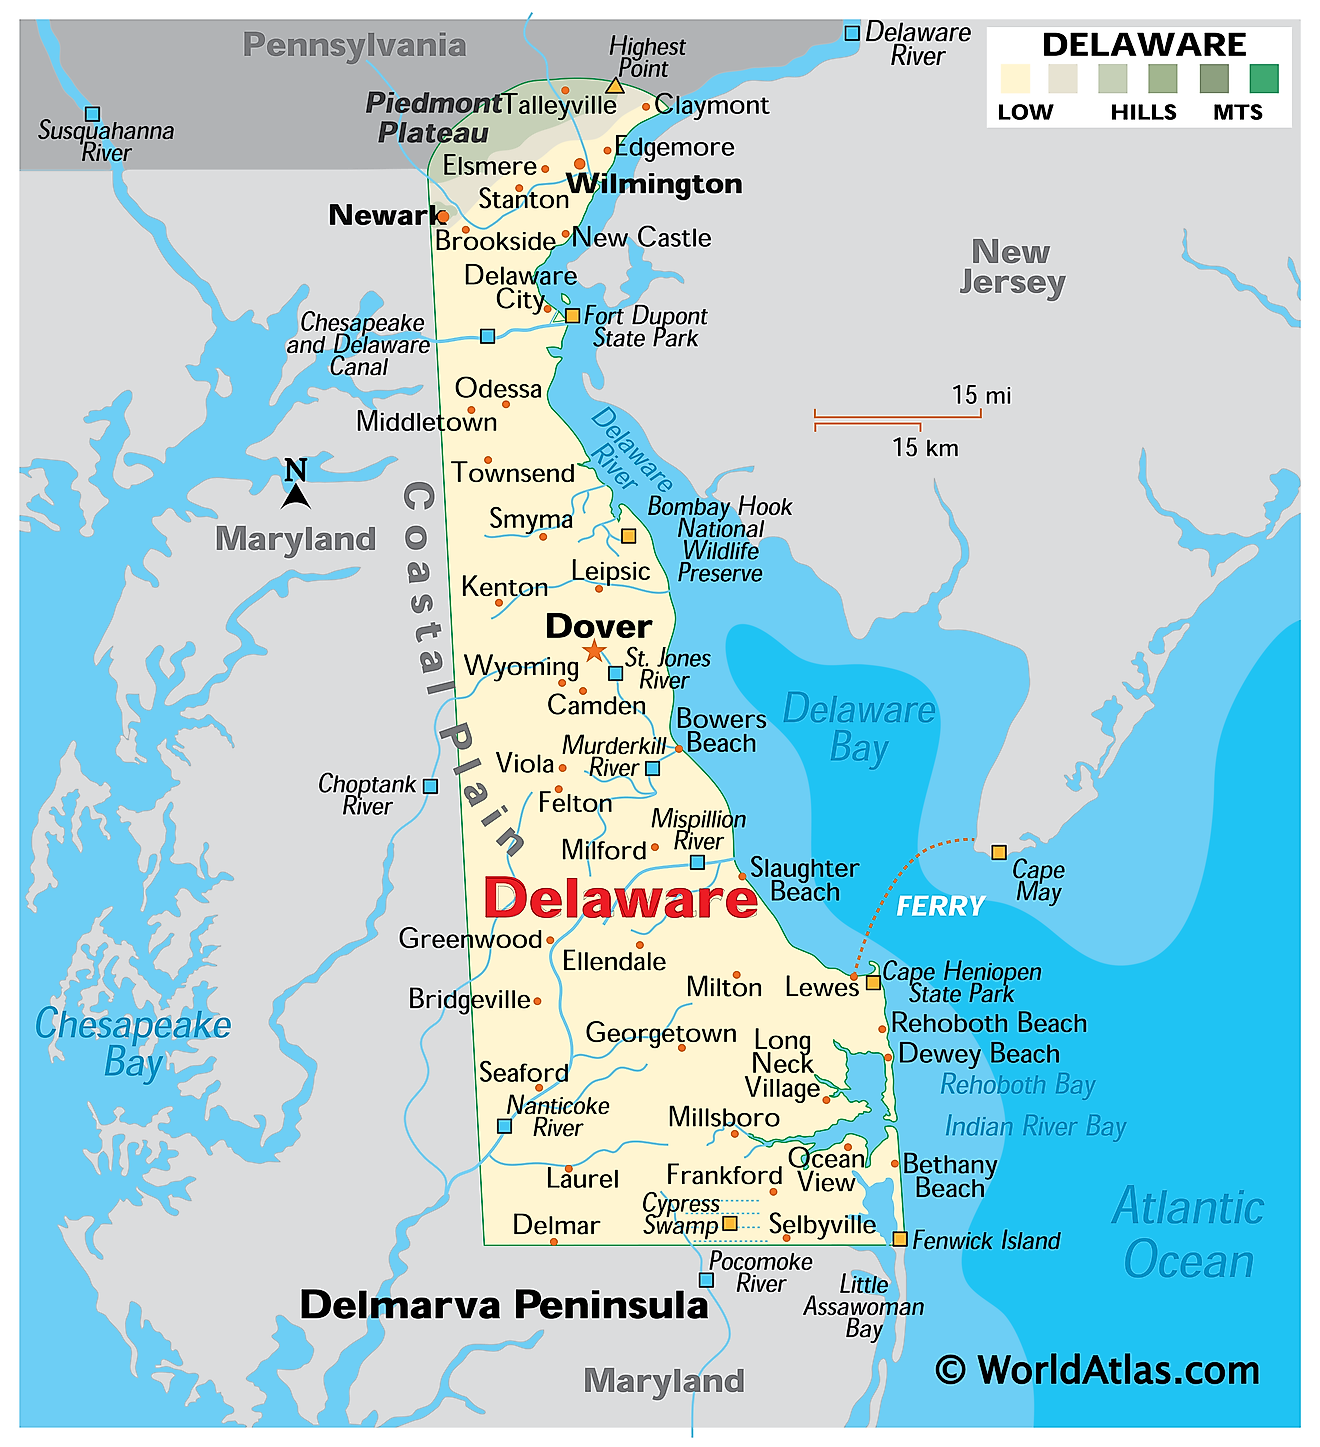 Mapa físico de Delaware. Muestra las características físicas de Delaware, incluidas sus cadenas montañosas, llanuras costeras, ríos y lagos principales.